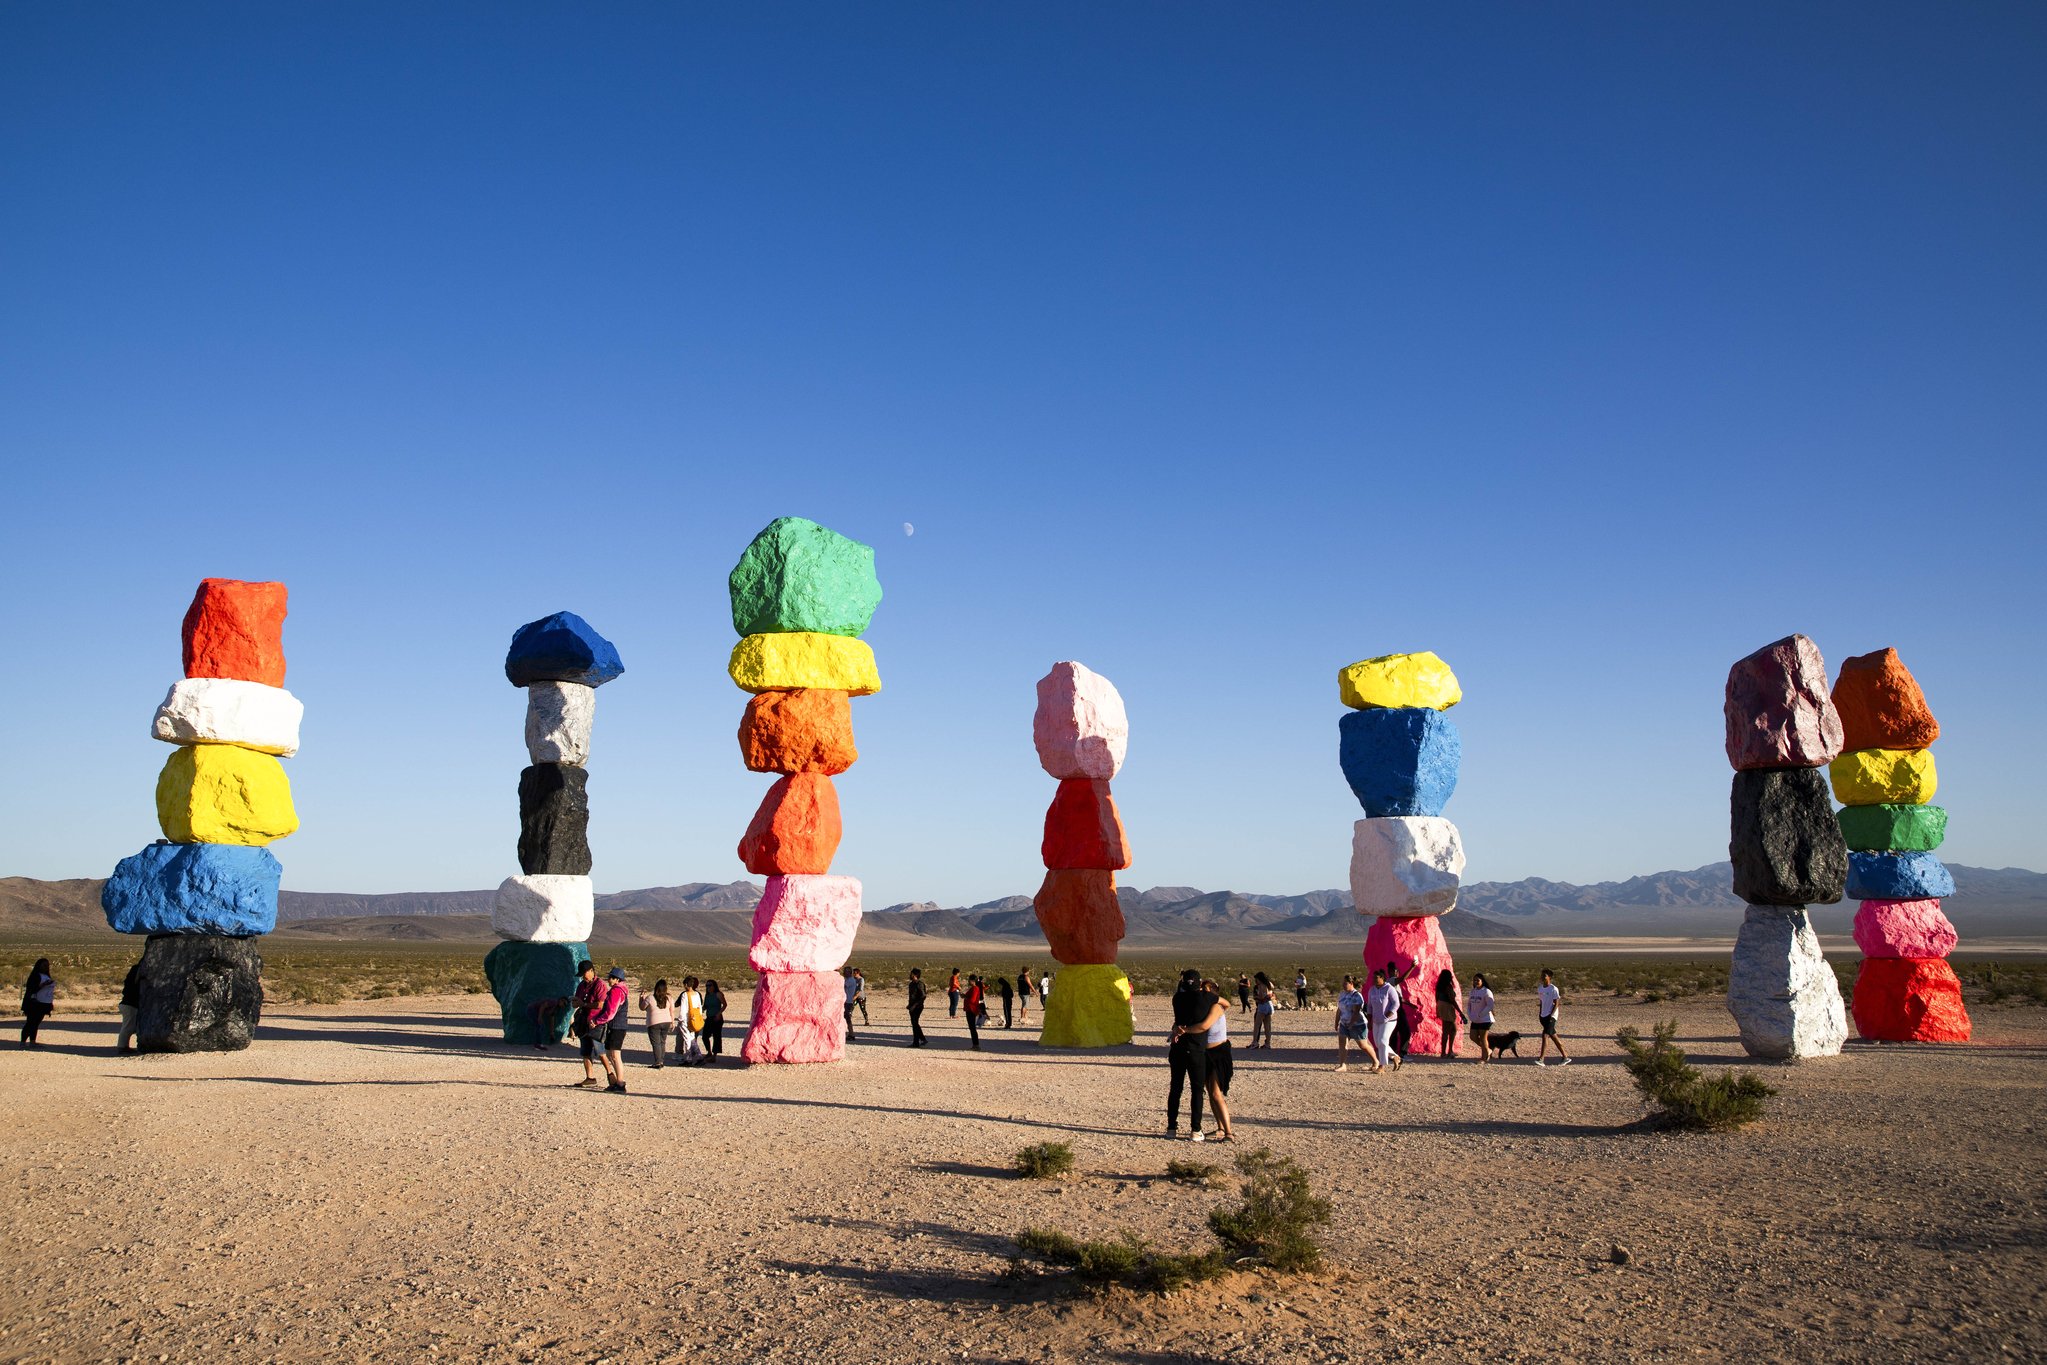 미국 라스베이거스 인근 사막에 설치된 작품 '7 매직 마운틴'. 스위스 예술가 우고 론디노네가 2016년 만든 작품으로 지난해 방탄소년단 RM이 이곳을 방문해 화제가 됐다.